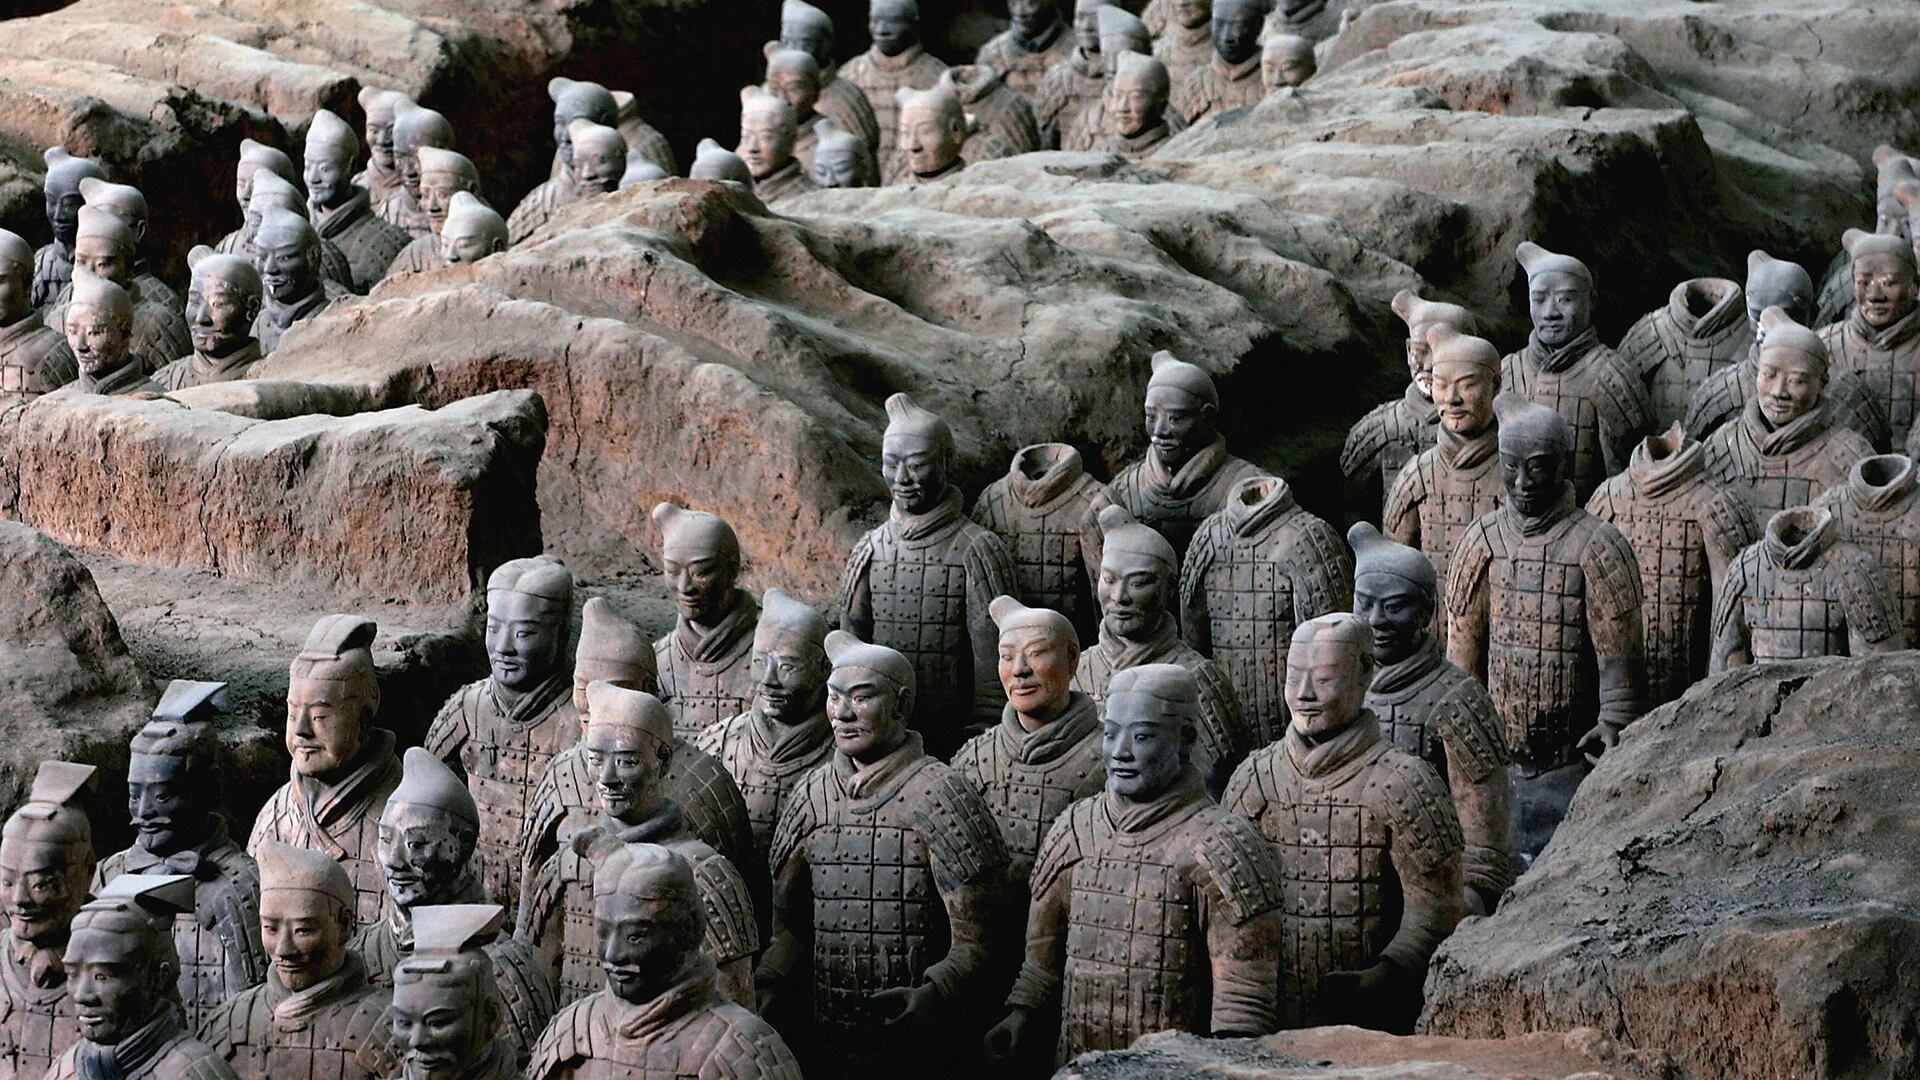 Los guerreros de la dinastía Qin, una de las ocho maravillas del mundo, fueron descubiertos en 1974 en el lado este de la tumba del primer emperador chino Qin Shihuang en Lintong. Son más de 8.000 guerreros de barro y 500 caballos que fueron enterrados en tres fosas para custodiar la tumba del emperador (Getty)